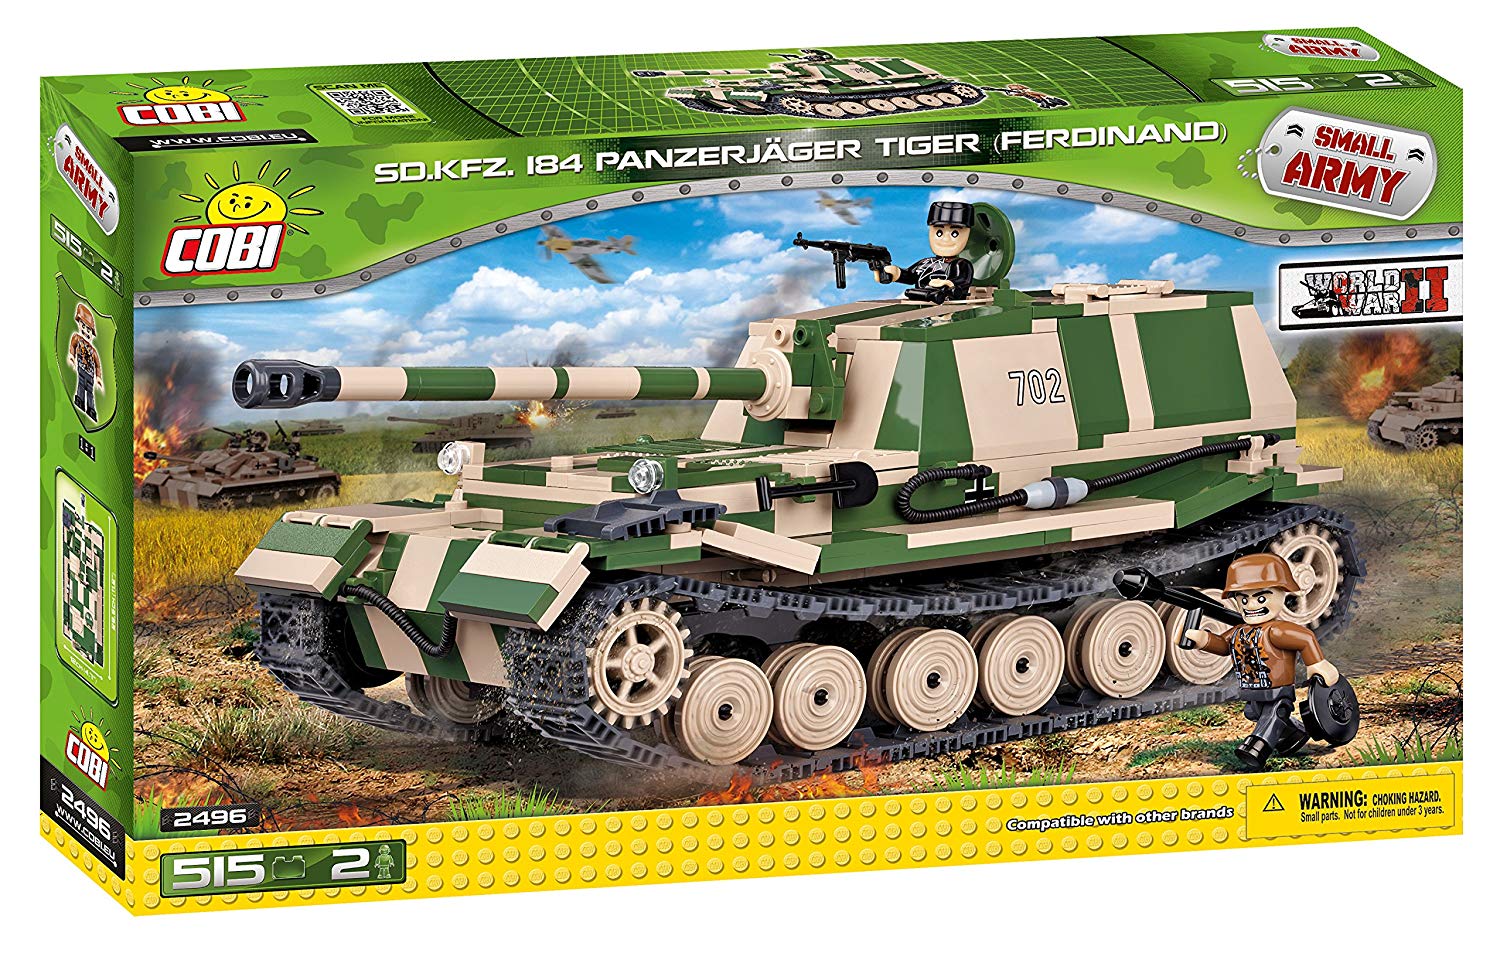 2496 - Panzerjäger Tiger (P) Ferdinand